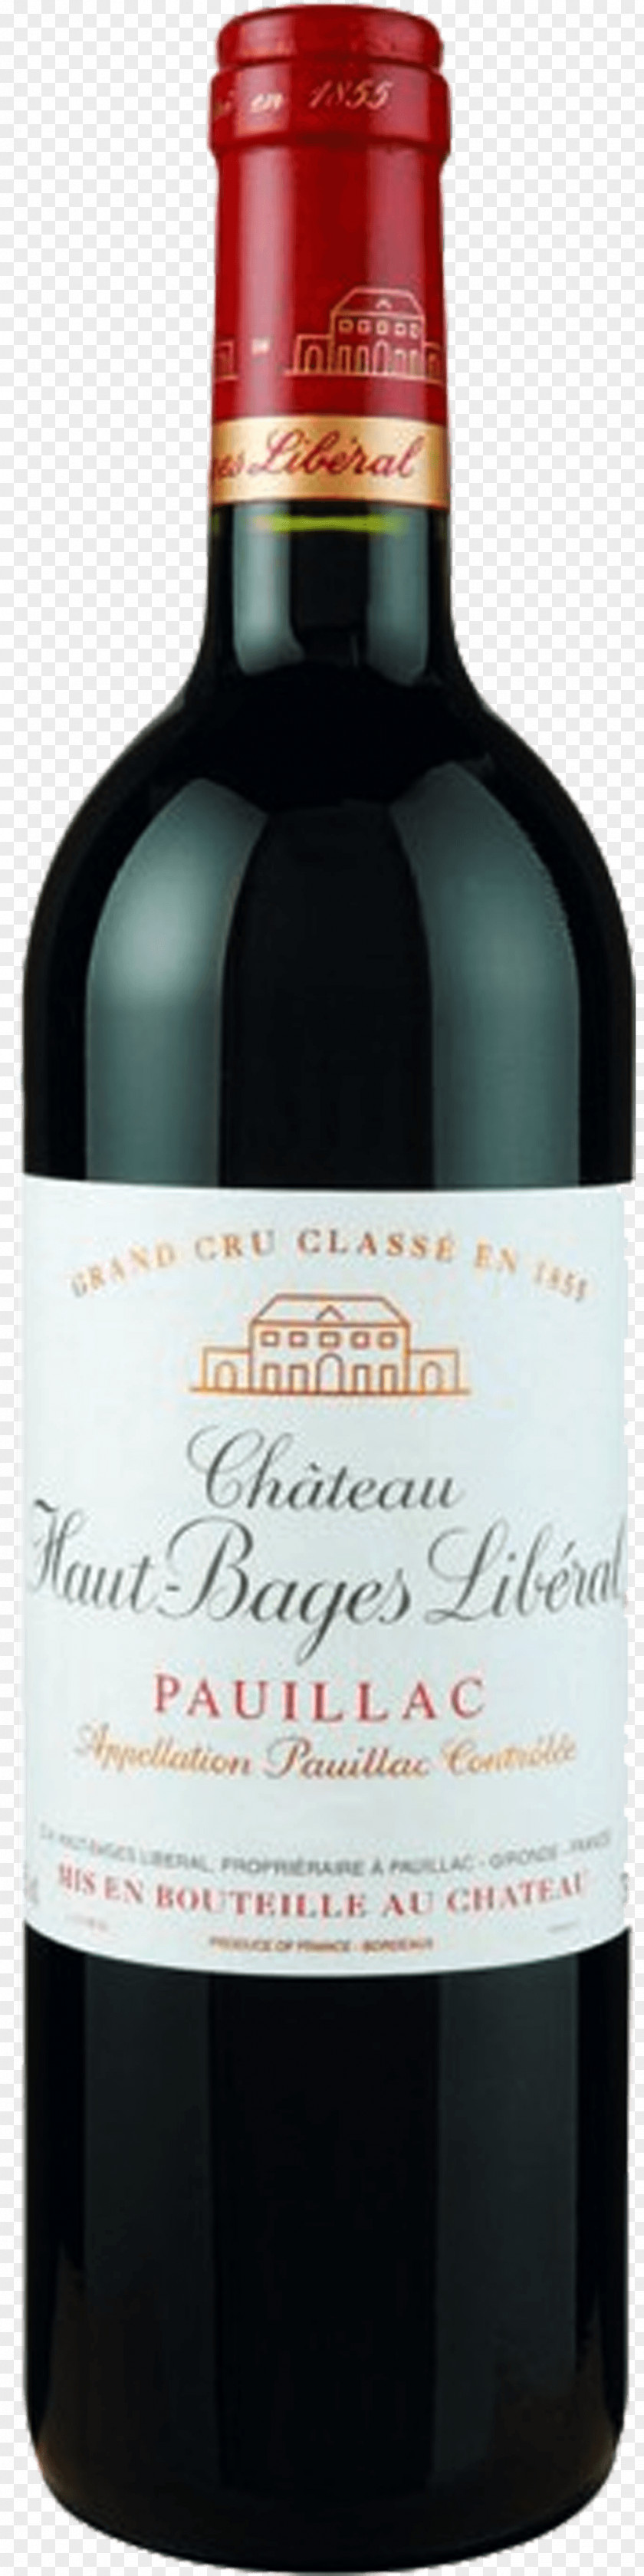 Wine Château Haut-Brion Saint-Estèphe AOC Saint-Émilion Cabernet Sauvignon PNG